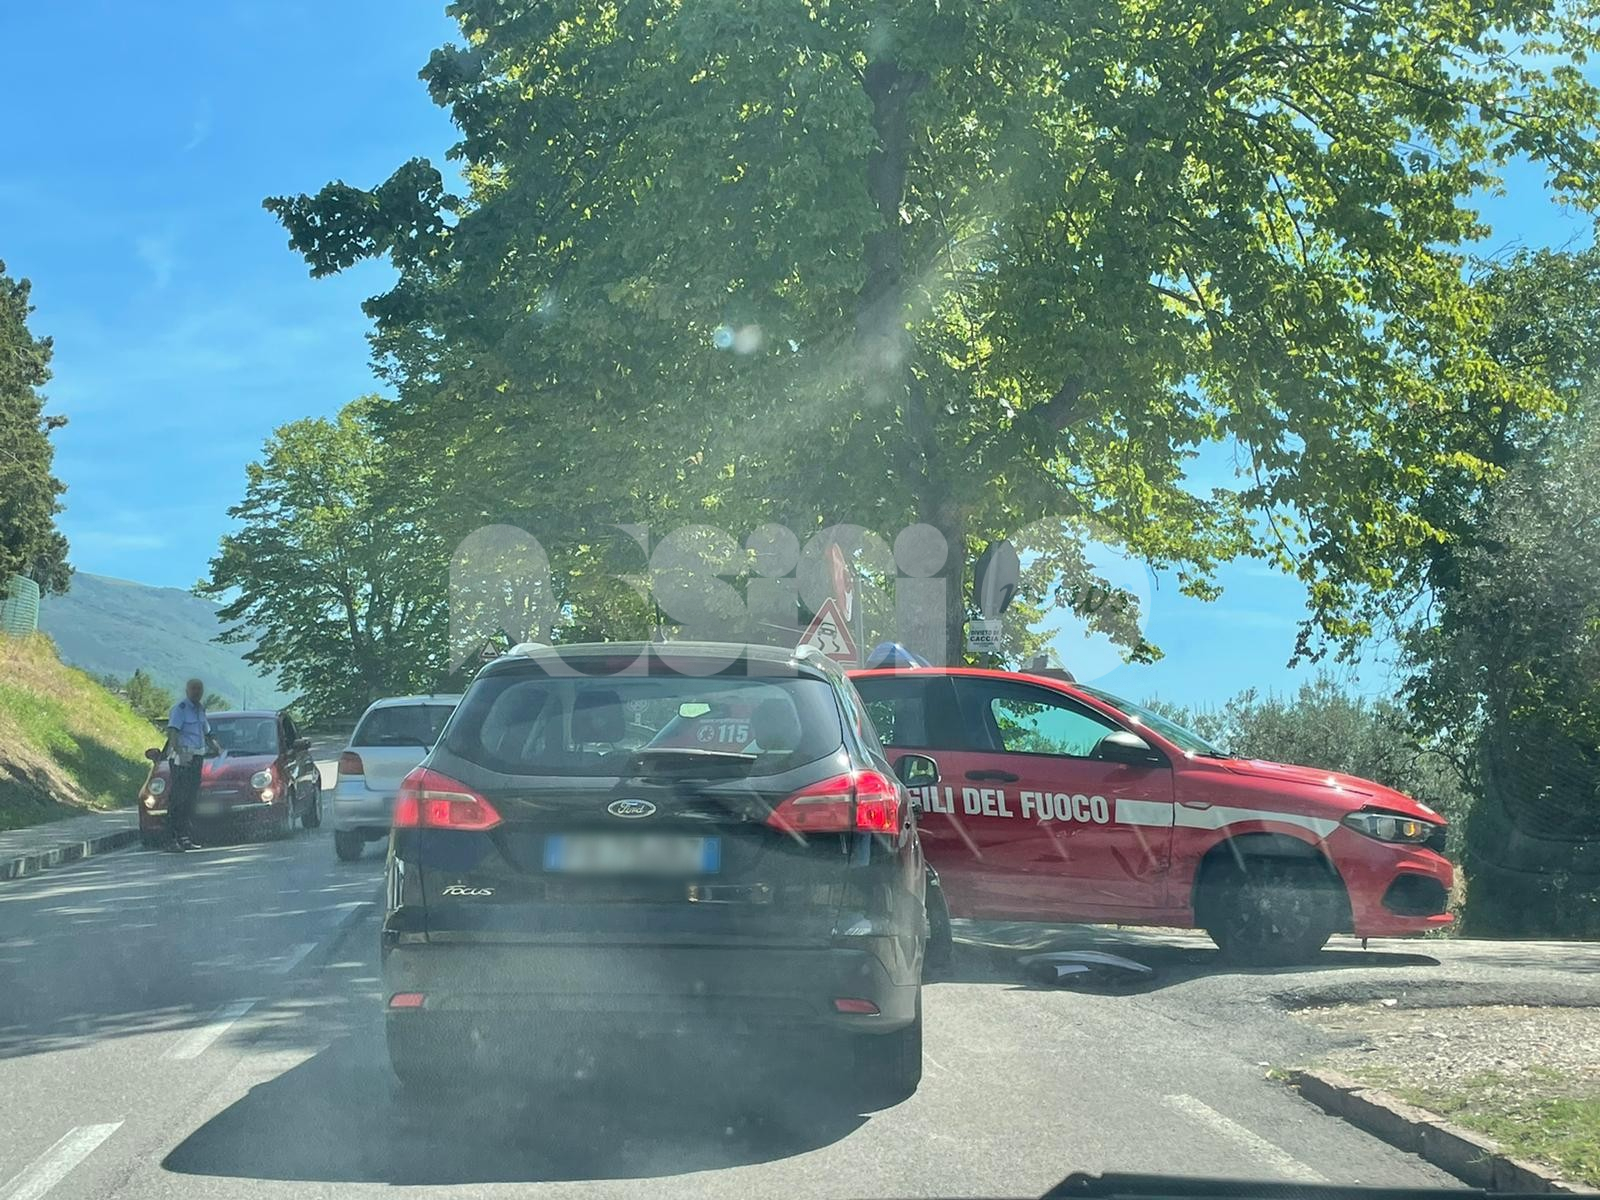 Auto dei pompieri si scontra con altra auto: disagi al traffico alle porte di Assisi